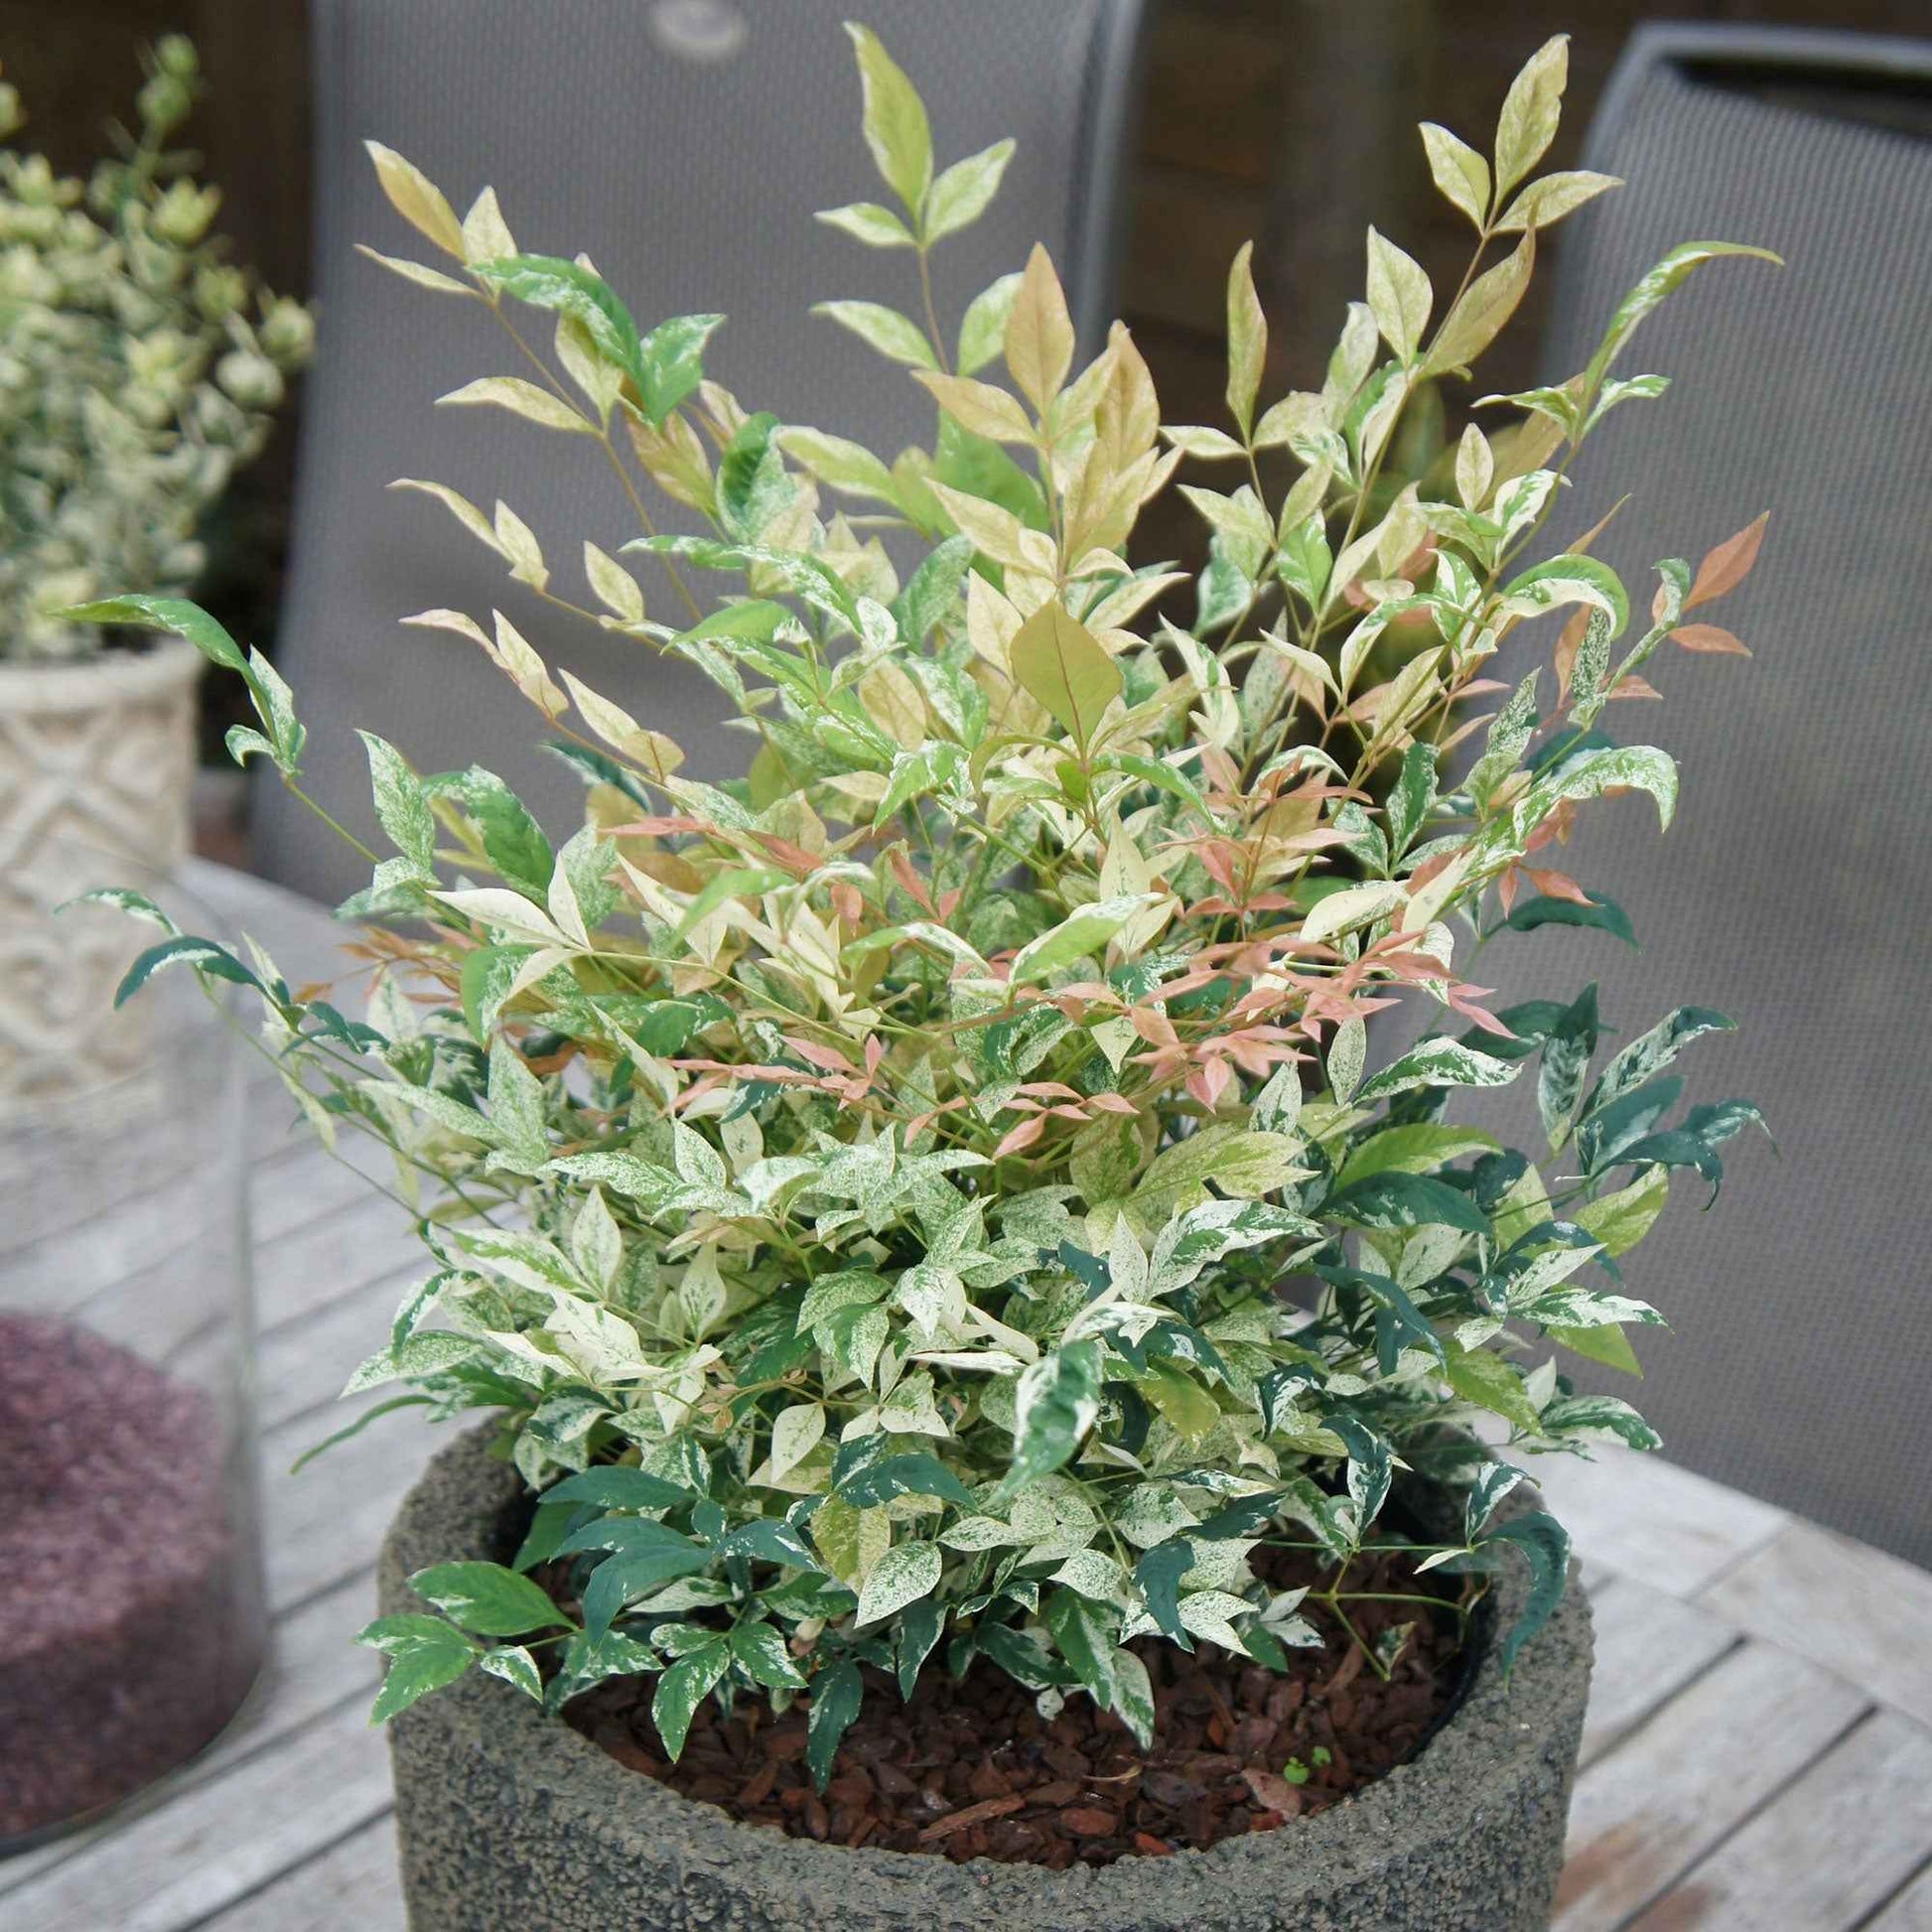 Hemelse Bamboe Nandina 'Twilight' roze-wit-groen - Winterhard - Winterharde planten